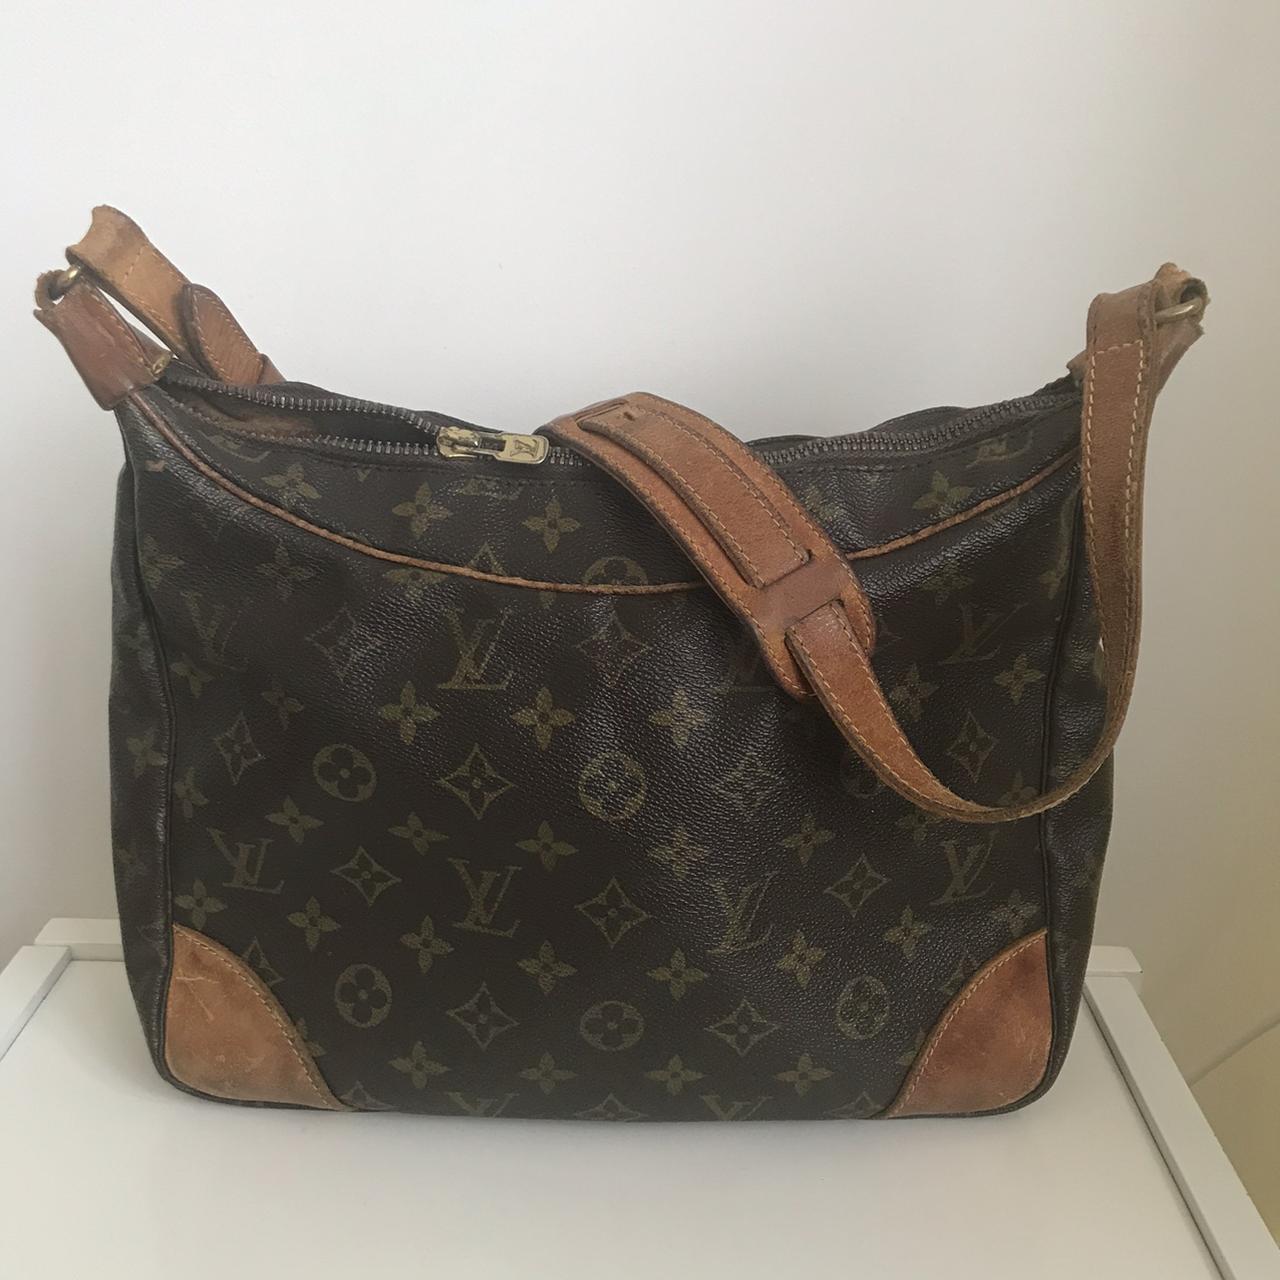 Louis Vuitton shoulder bag with adjustable... - Depop